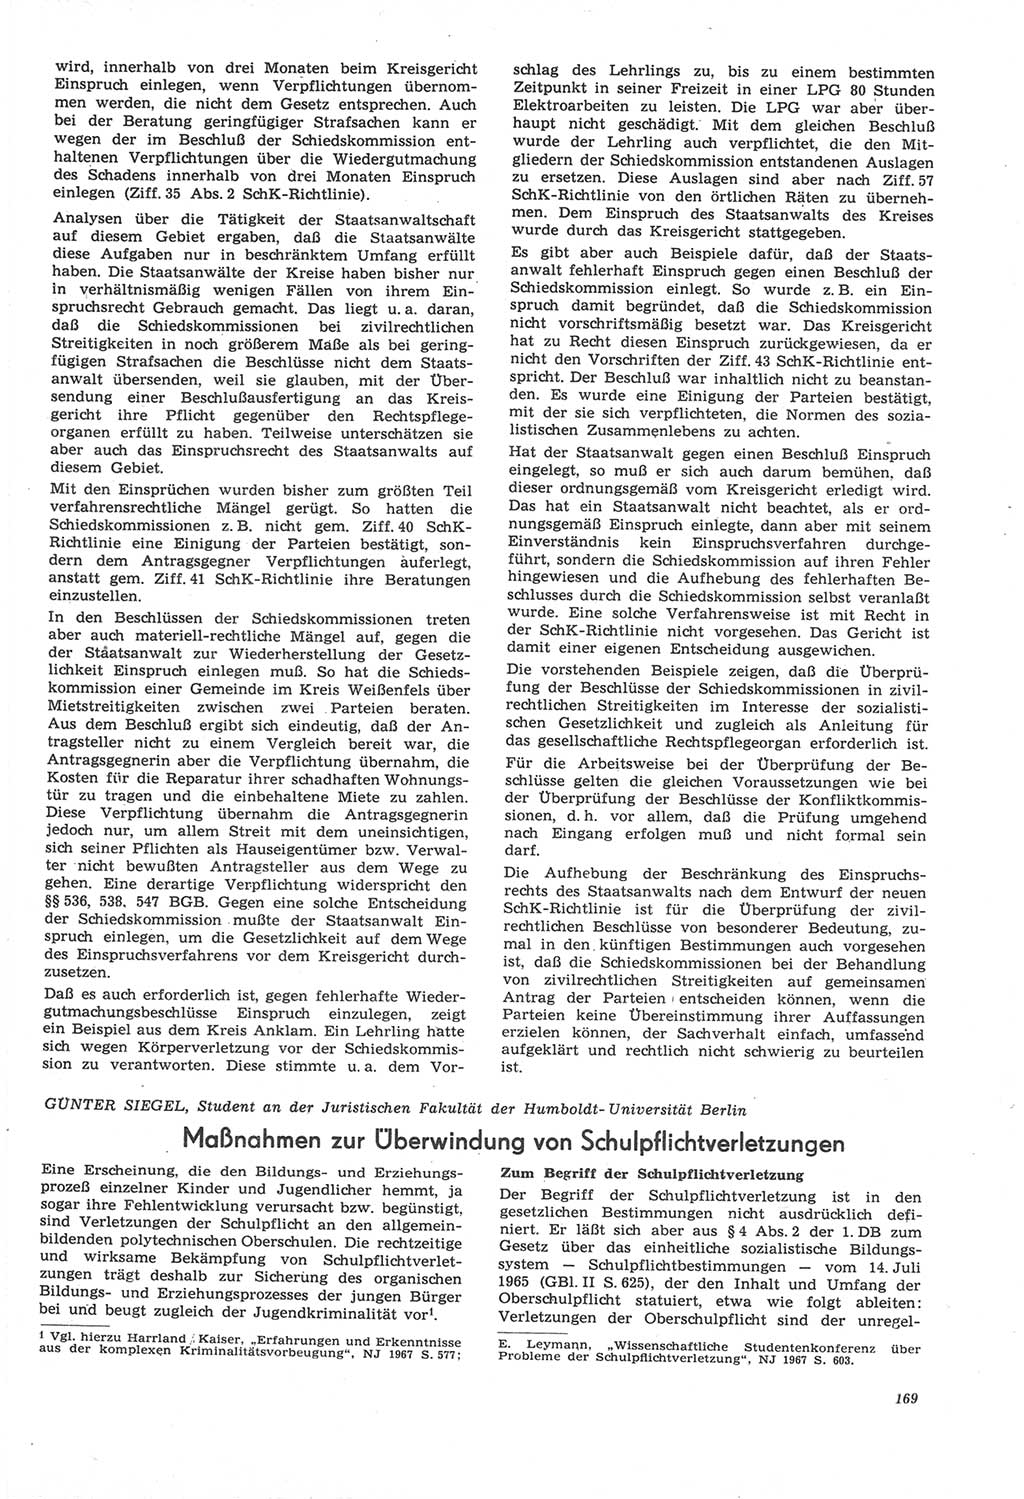 Neue Justiz (NJ), Zeitschrift für Recht und Rechtswissenschaft [Deutsche Demokratische Republik (DDR)], 22. Jahrgang 1968, Seite 169 (NJ DDR 1968, S. 169)